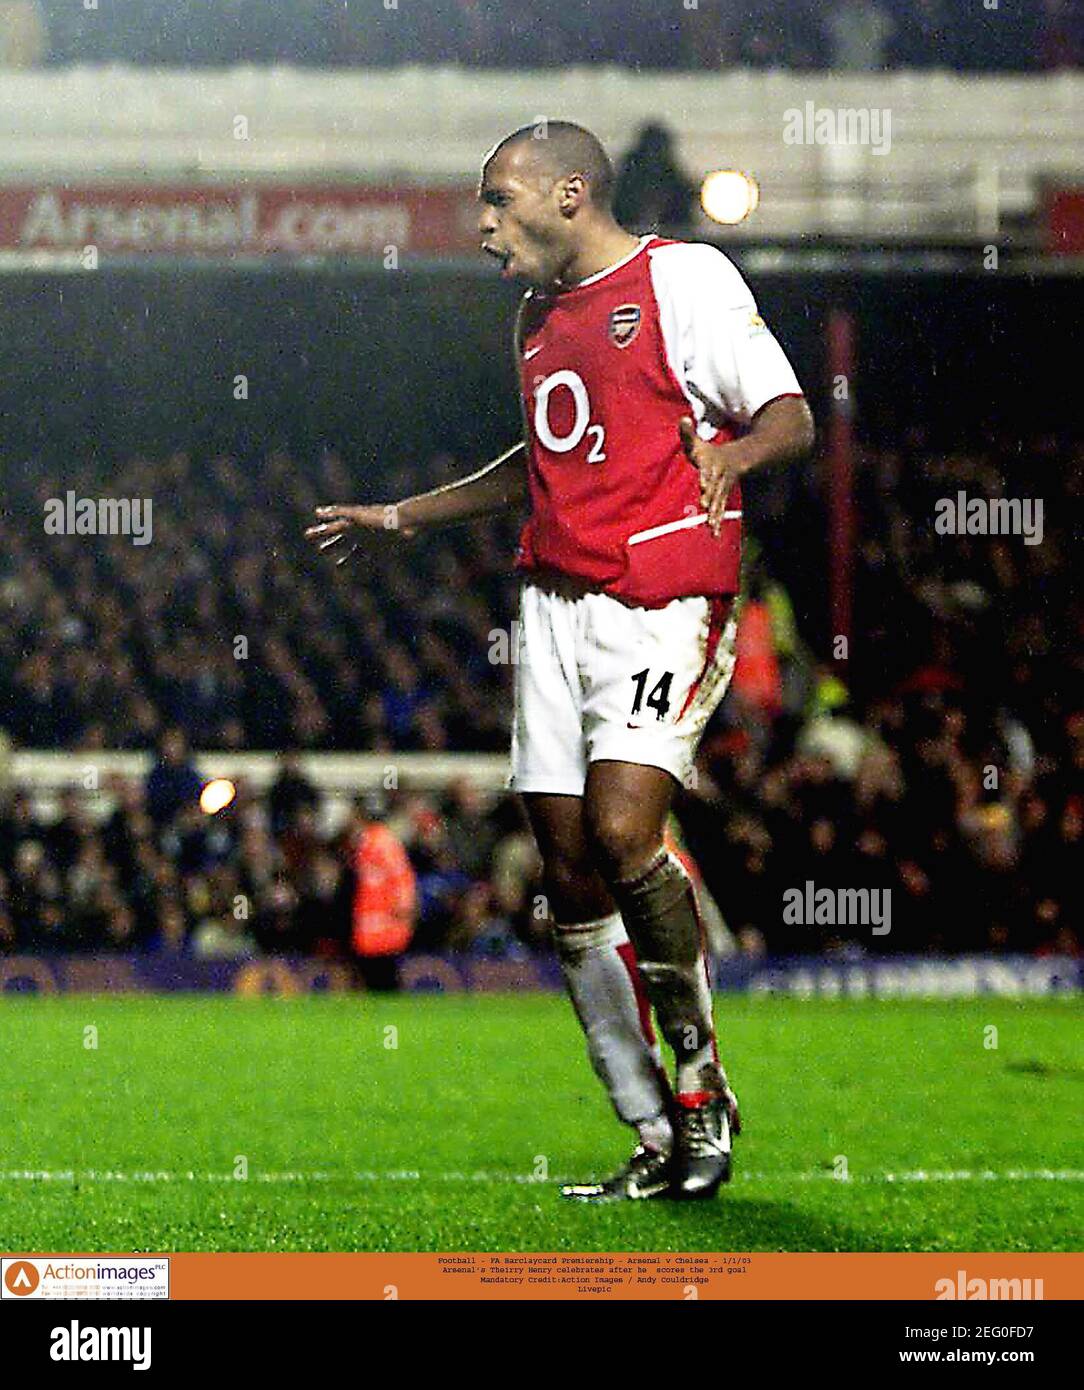 Fútbol - FA Barclaycard Premiership - Arsenal contra Chelsea - 1/1/03 Thierry  Henry del Arsenal celebra después de que él anota el tercero Objetivo  crédito obligatorio:Imágenes de acción / Andy Couldridge Livepic